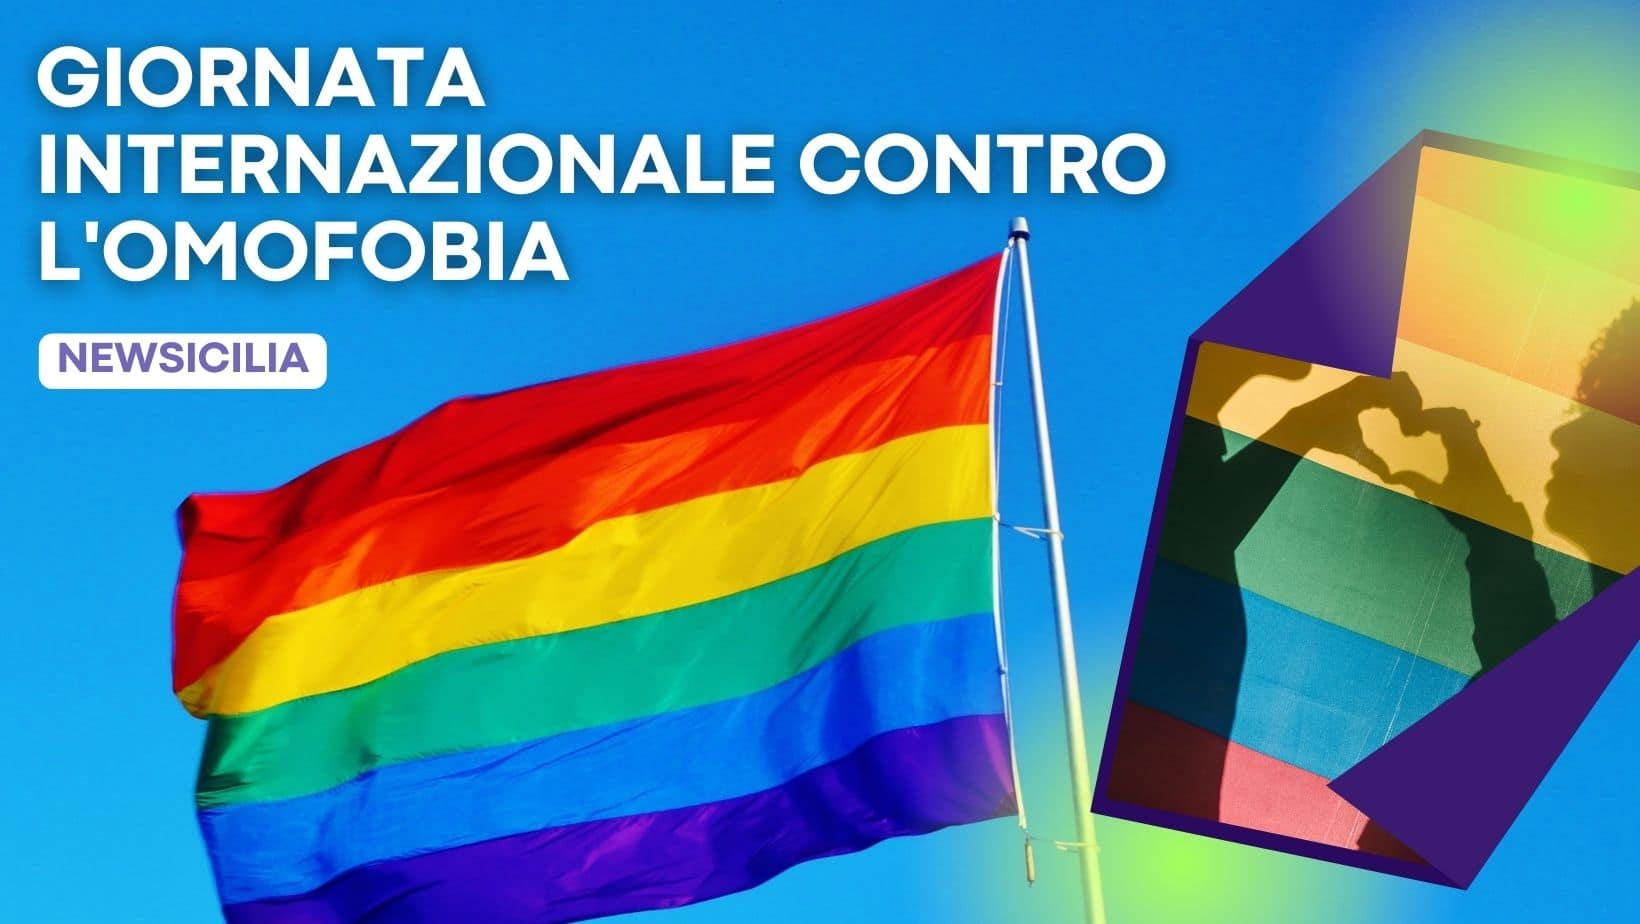 Giornata internazionale contro l’omofobia, dalla lotta contro i pregiudizi alla bandiera arcobaleno di Mengoni